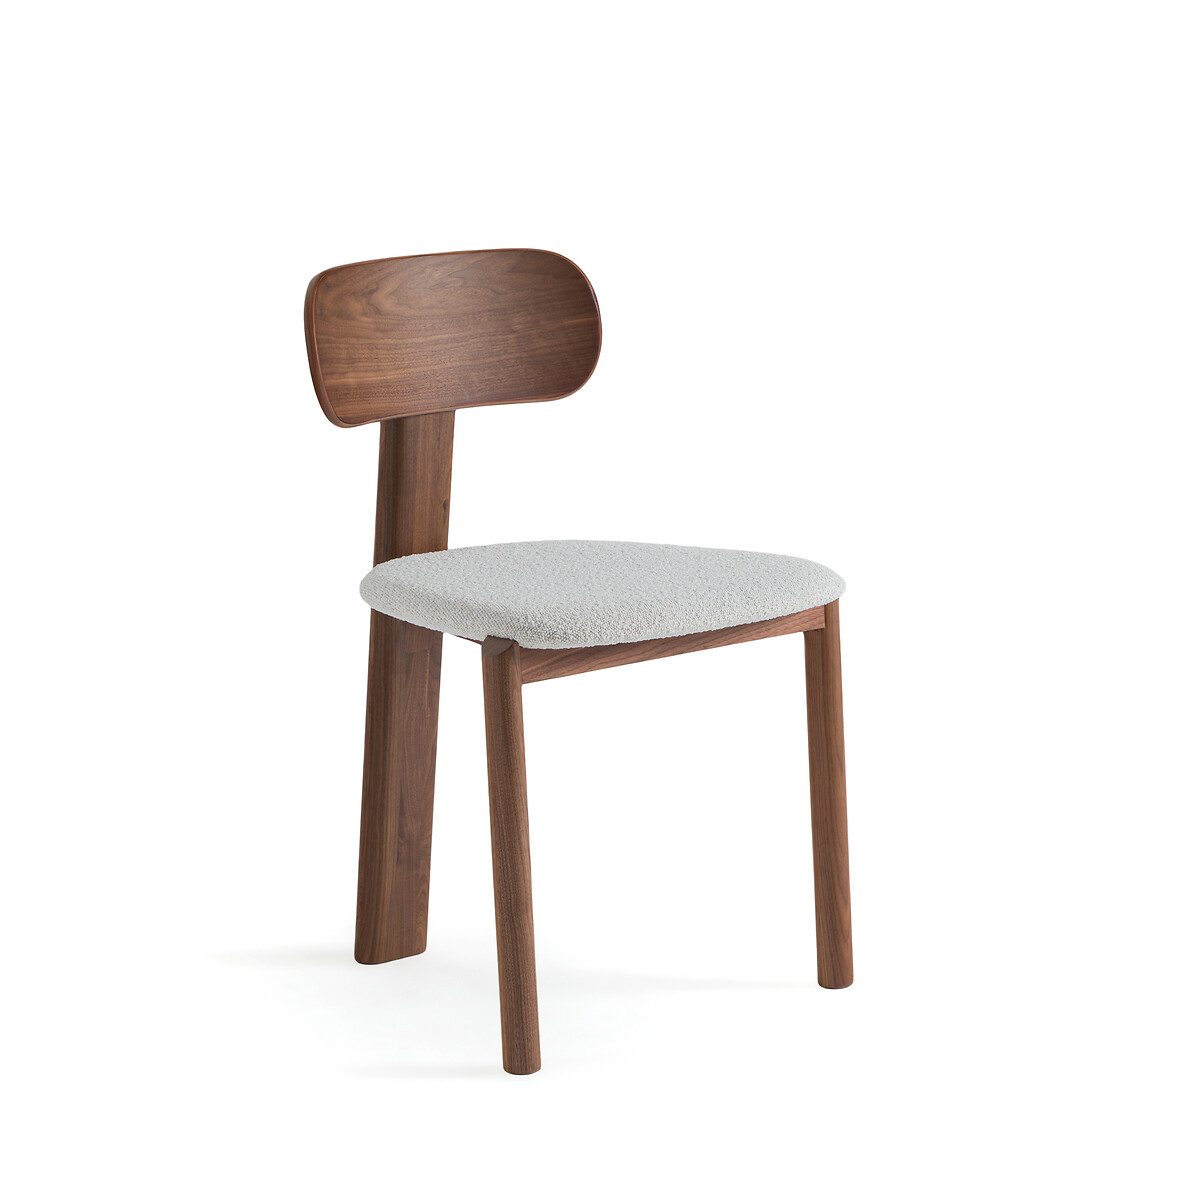 Стул с обивкой из буклированной ткани дизайн Э Галлина Marais единый размер каштановый кресло для столовой marais дизайн э галлина единый размер каштановый